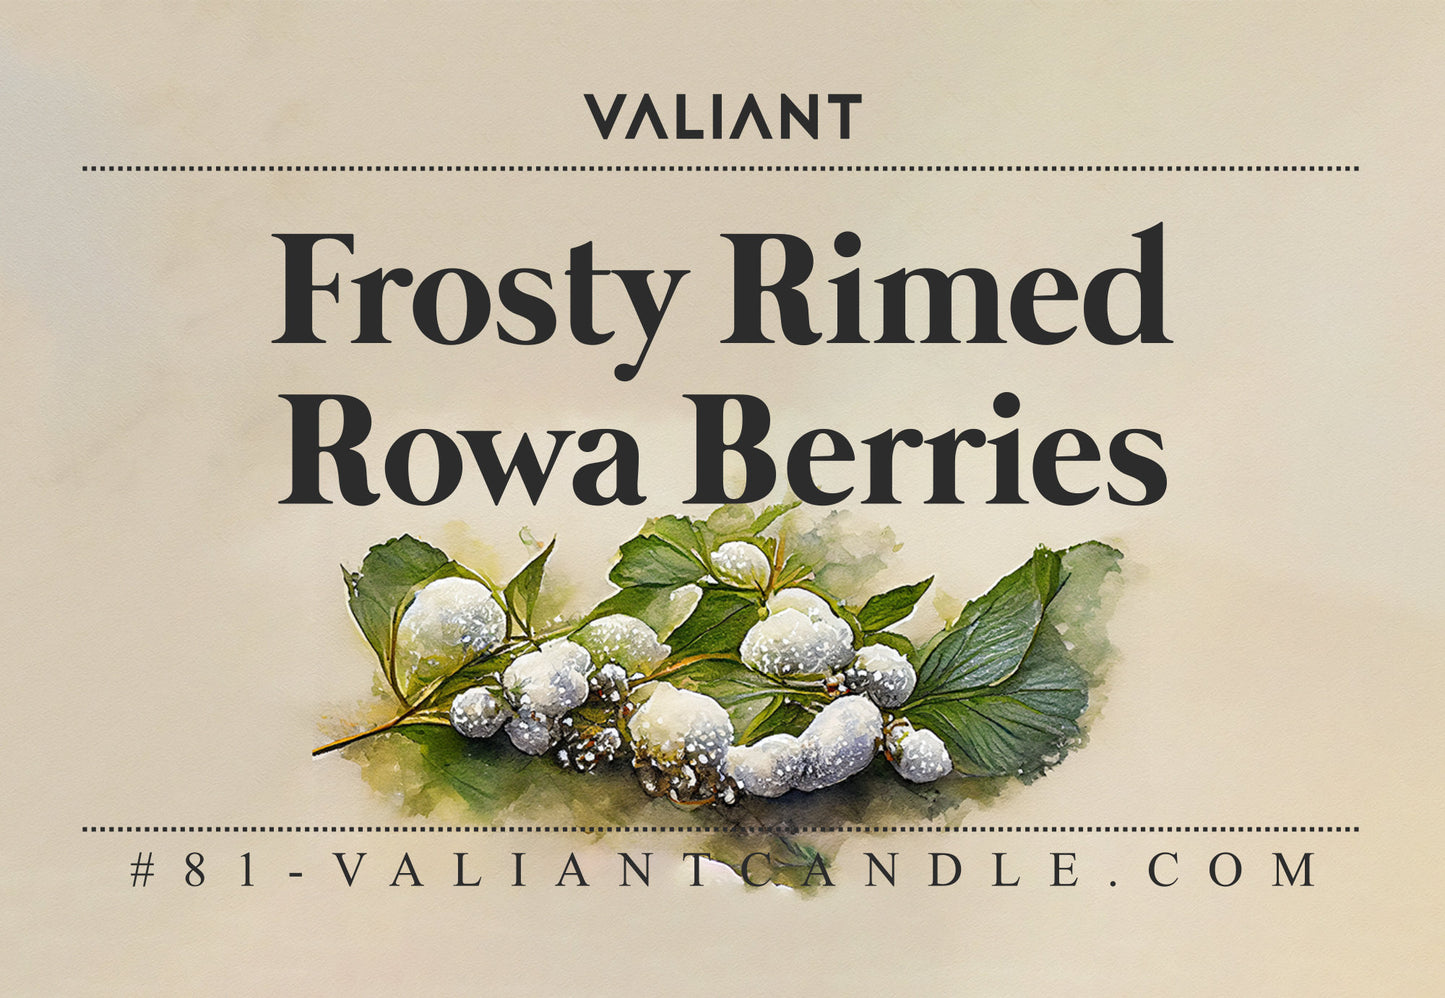 Frosty Rimed Rowa Berries